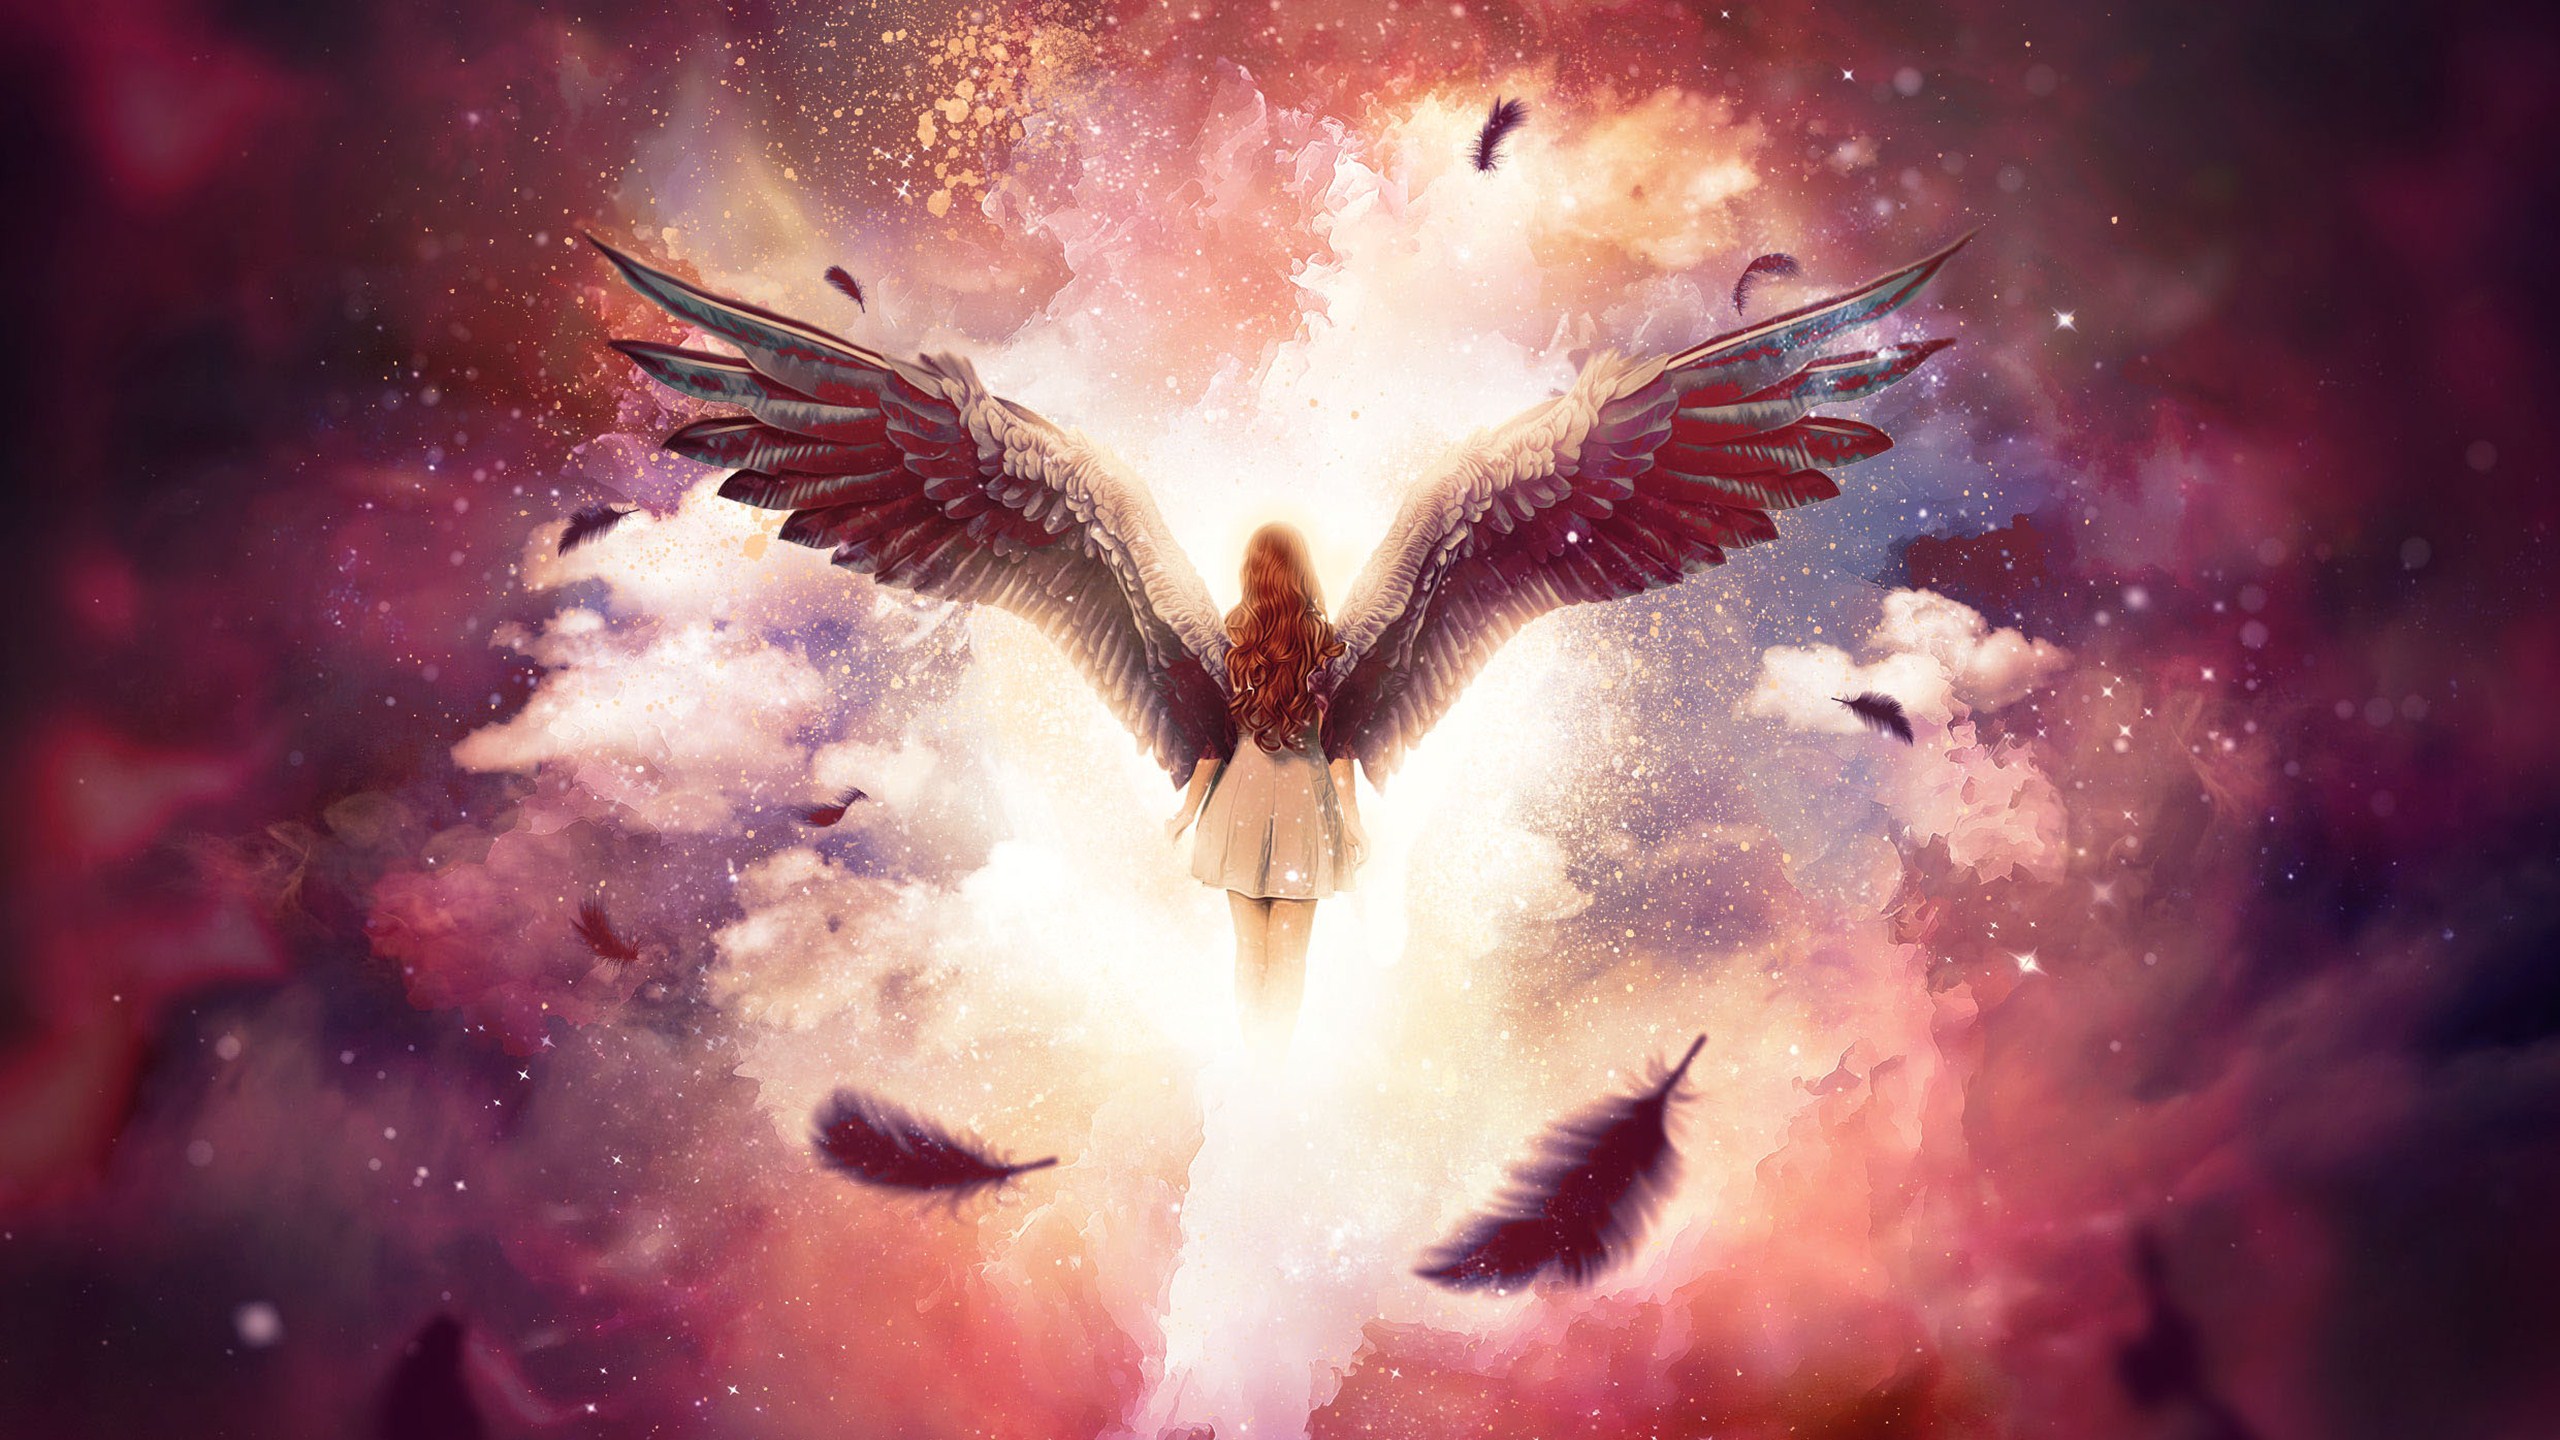 Скачать обои бесплатно Фэнтези, Облака, Крылья, Ангел картинка на рабочий стол ПК